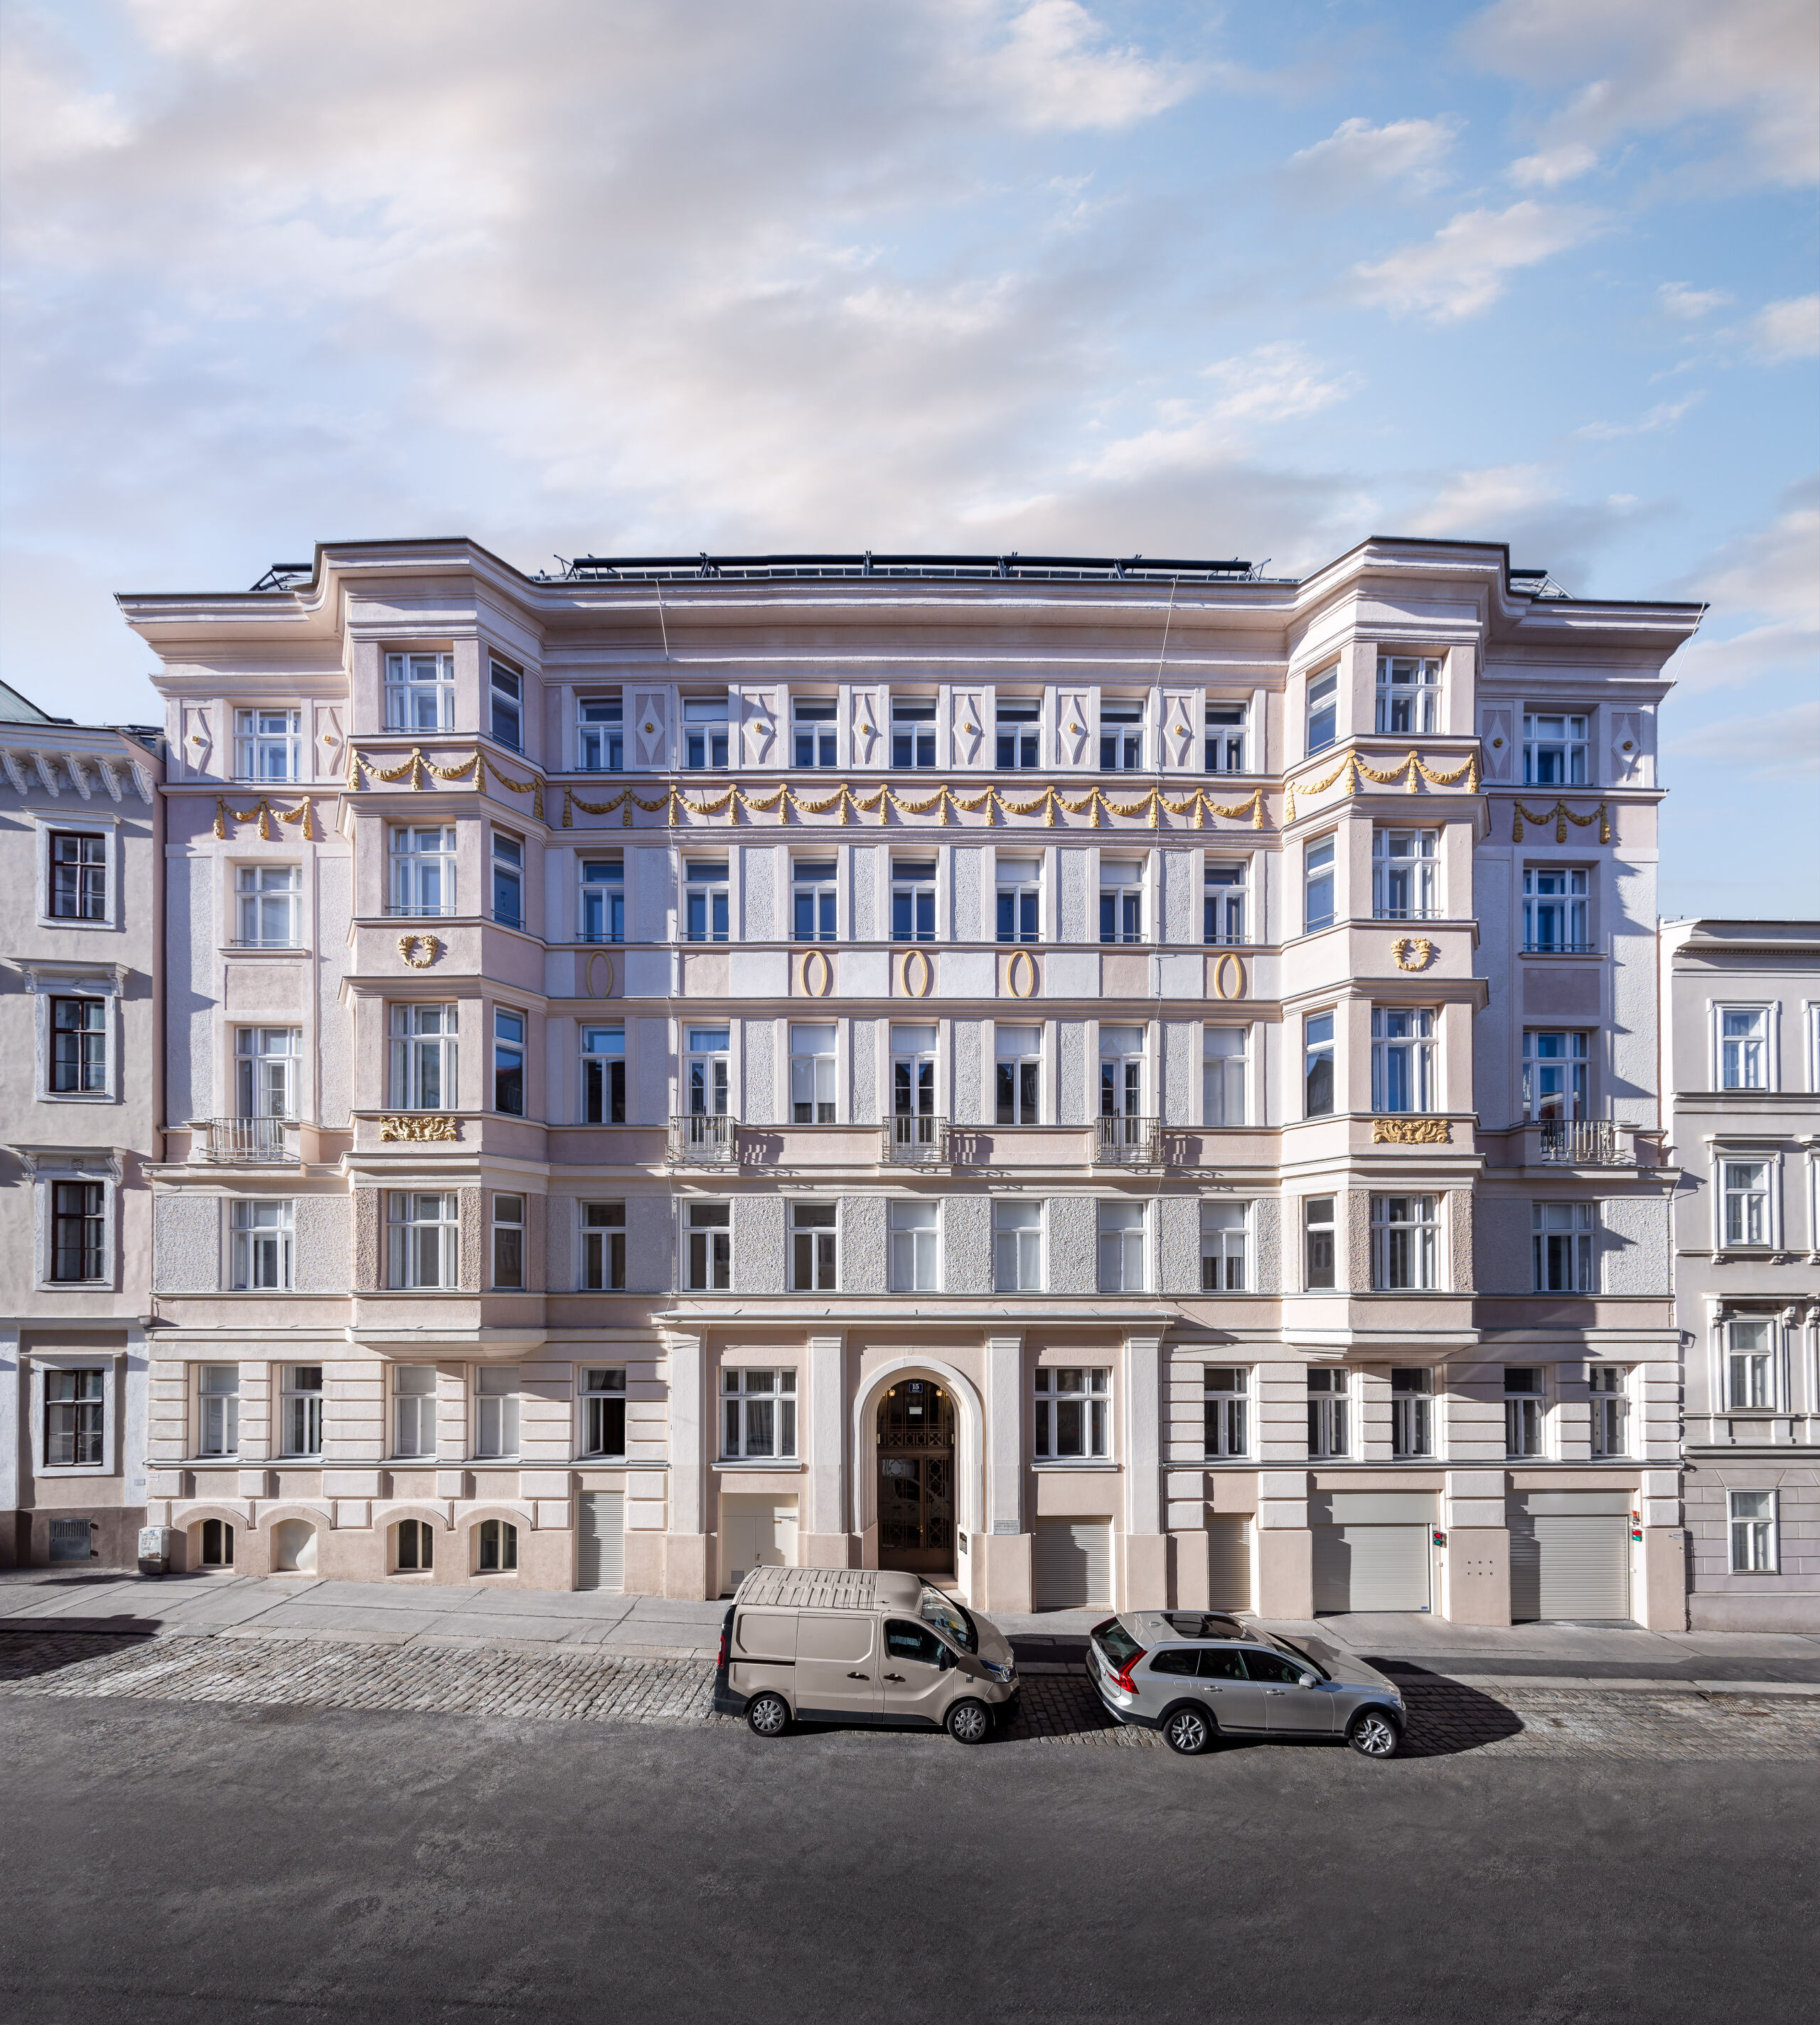 Die wunderschöne Fassade des Zinshauses in der Skodagasse erstrahlt nach der Revitalisierung in prunkvollem, neuen Glanz.